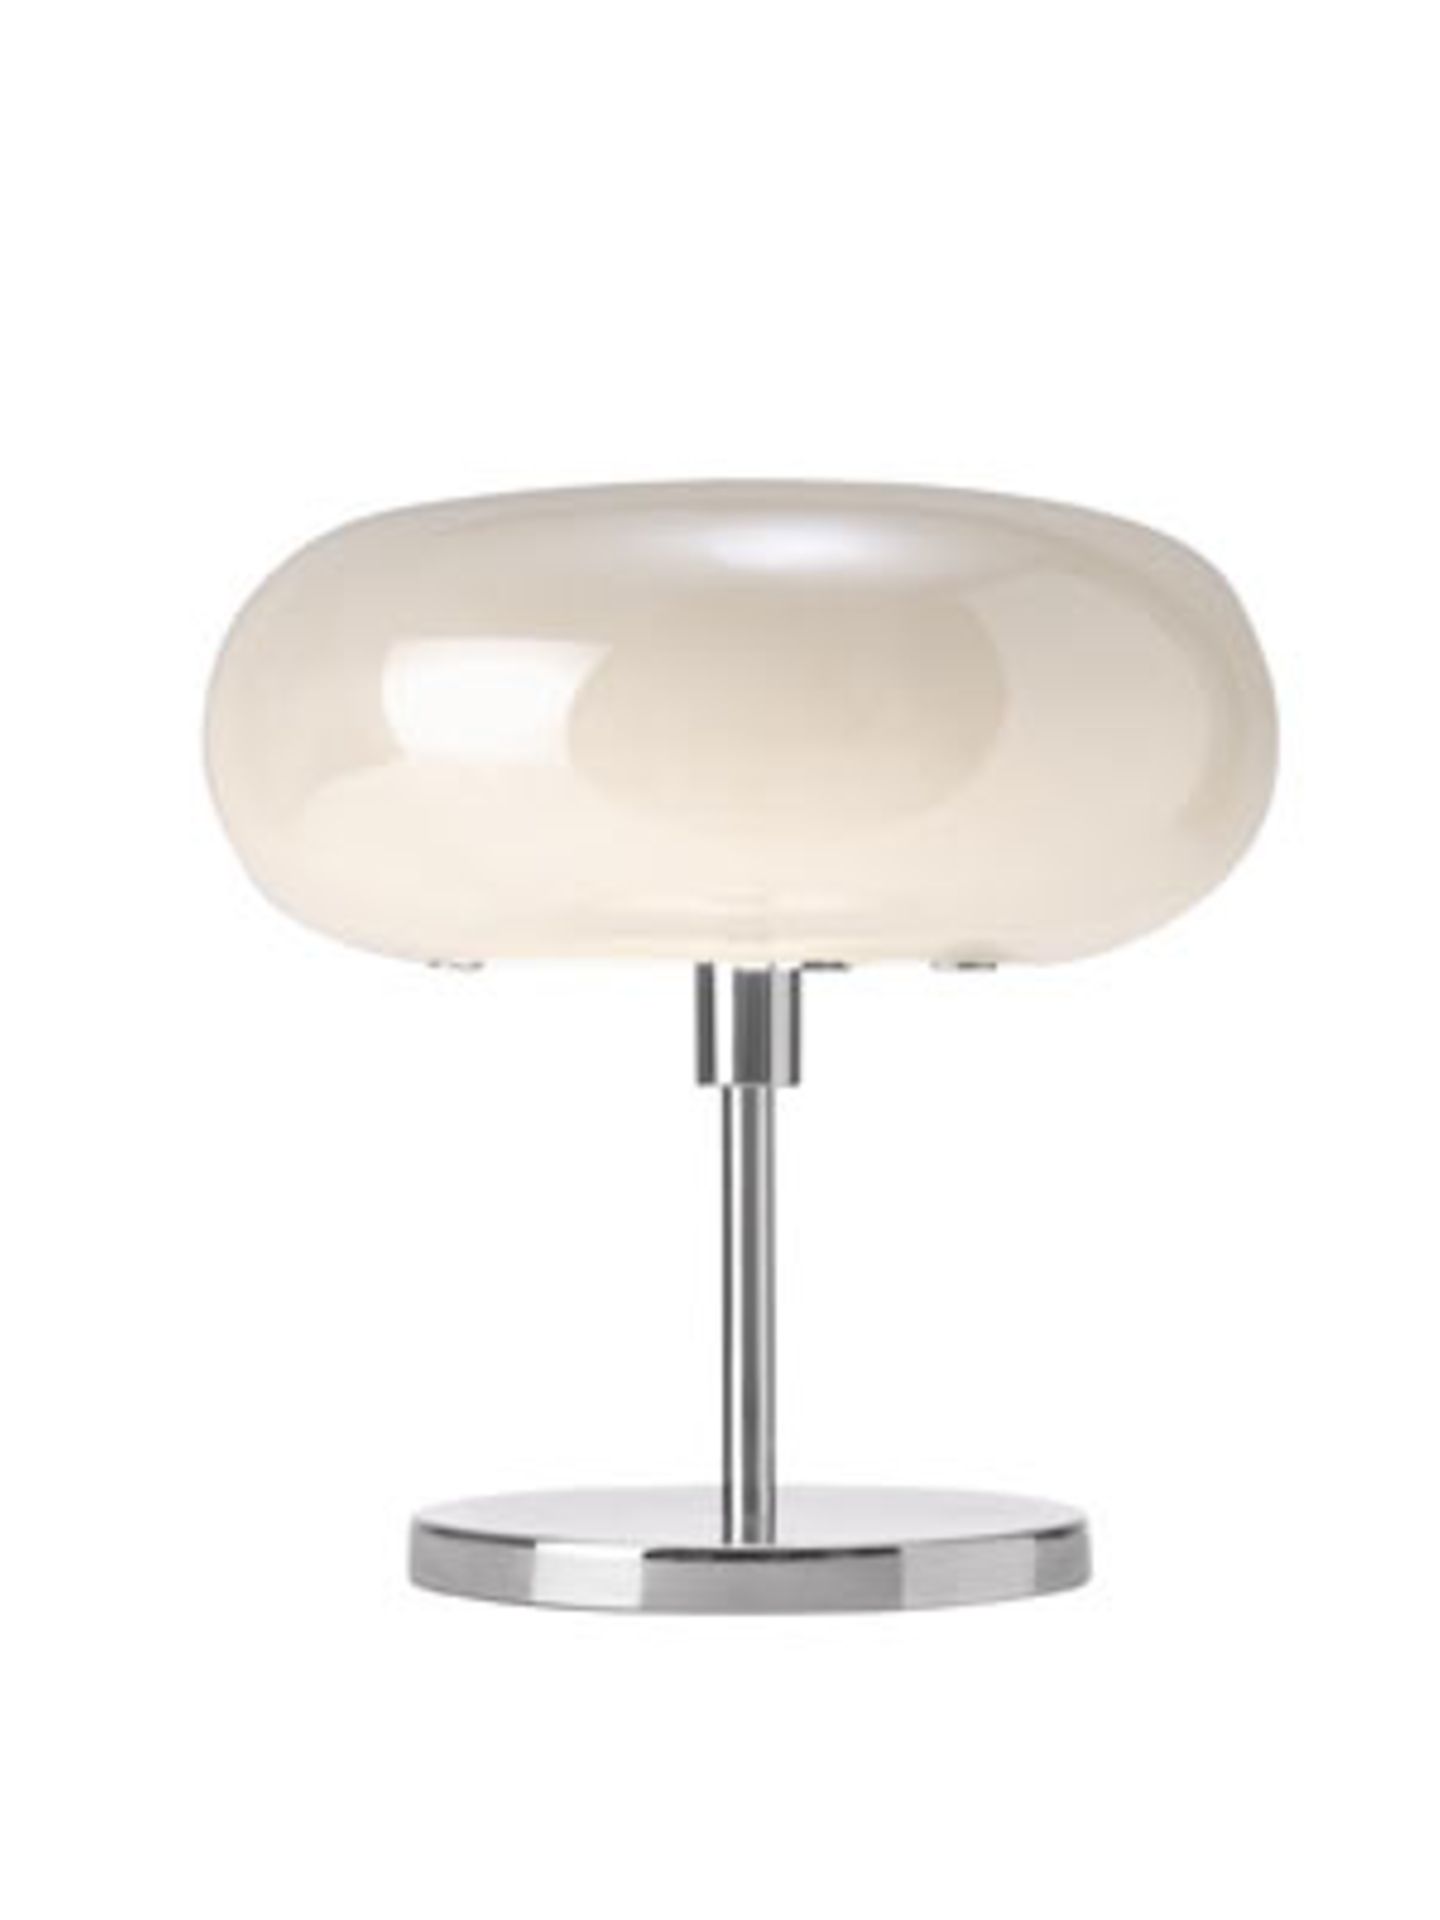 Esprit Home    Tischleuchte "Opal" mit Perlmutt-Lampenschirm von Esprit Home. Durchmesser 30 cm, Höhe 32,5 cm, um 300 Euro. Über www.esprit.com/home.